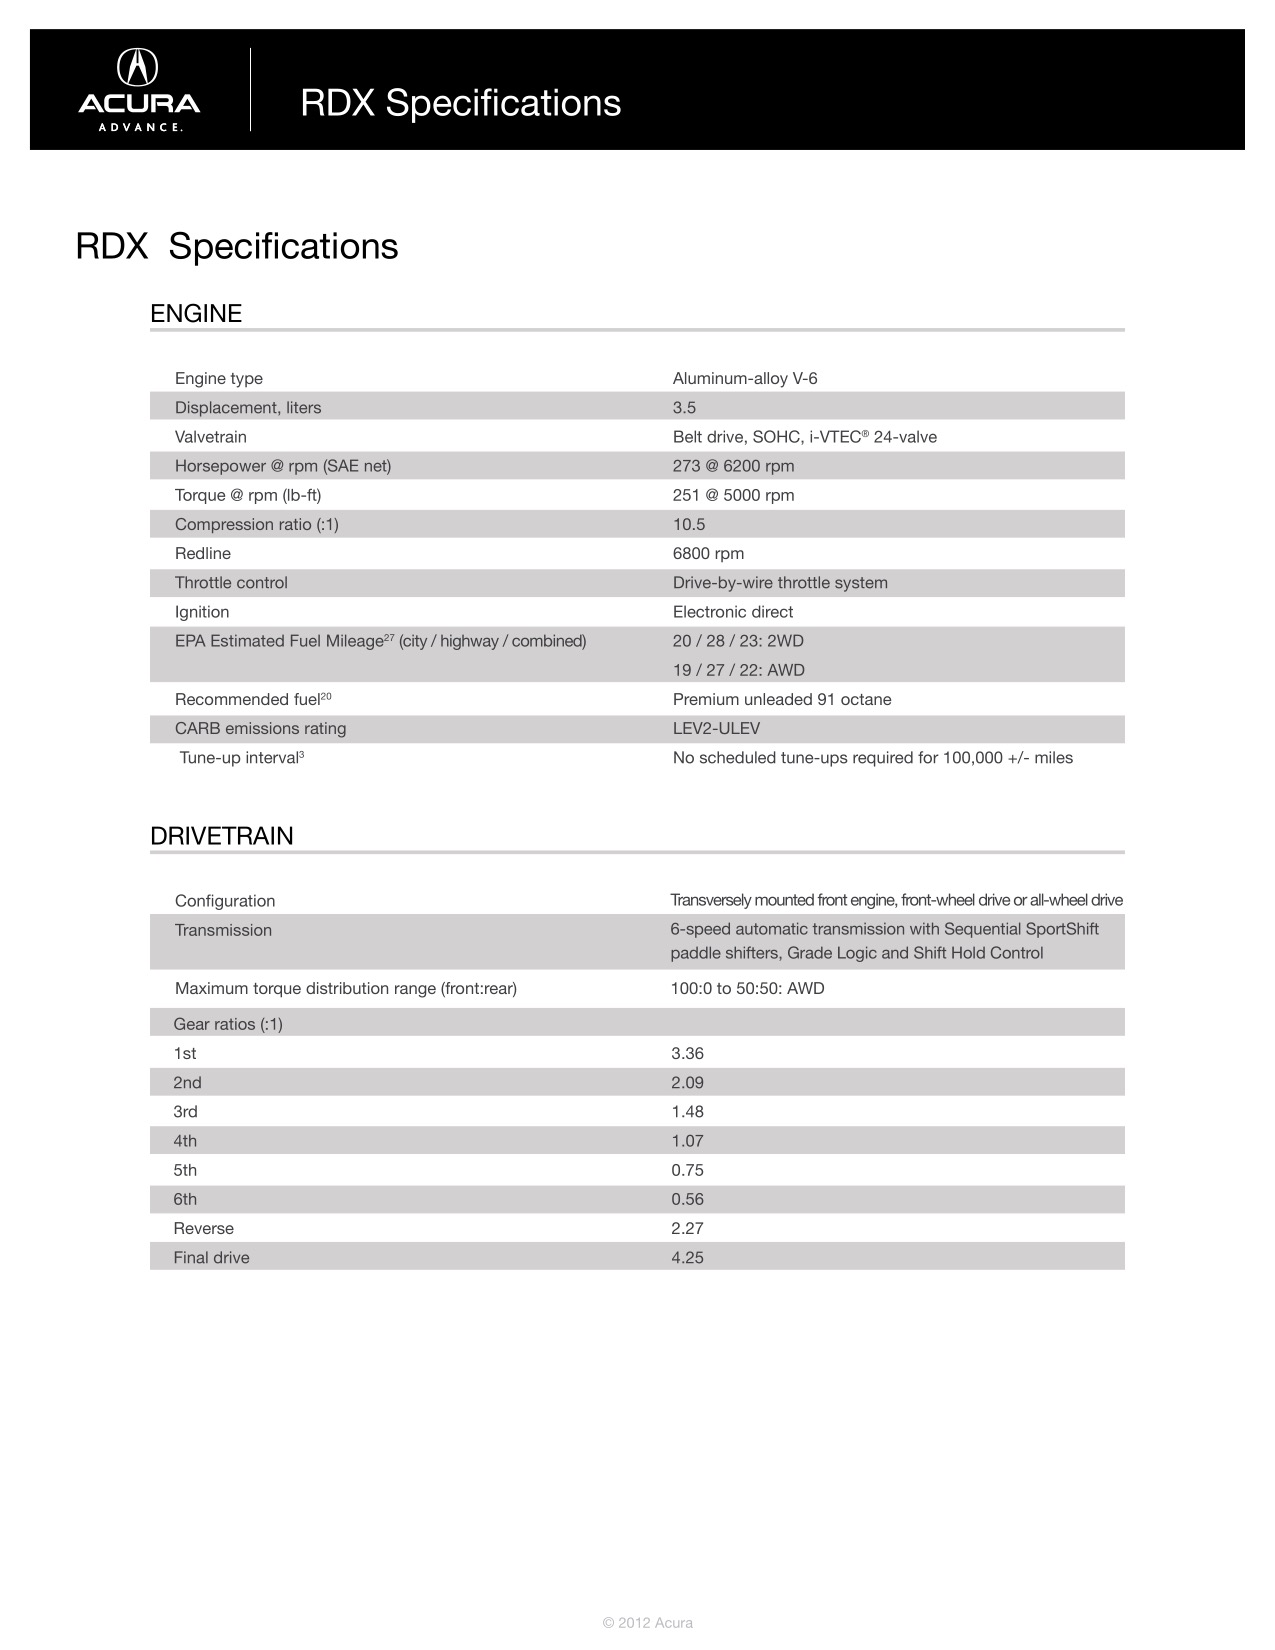 2013 Acura RDX Brochure Page 28